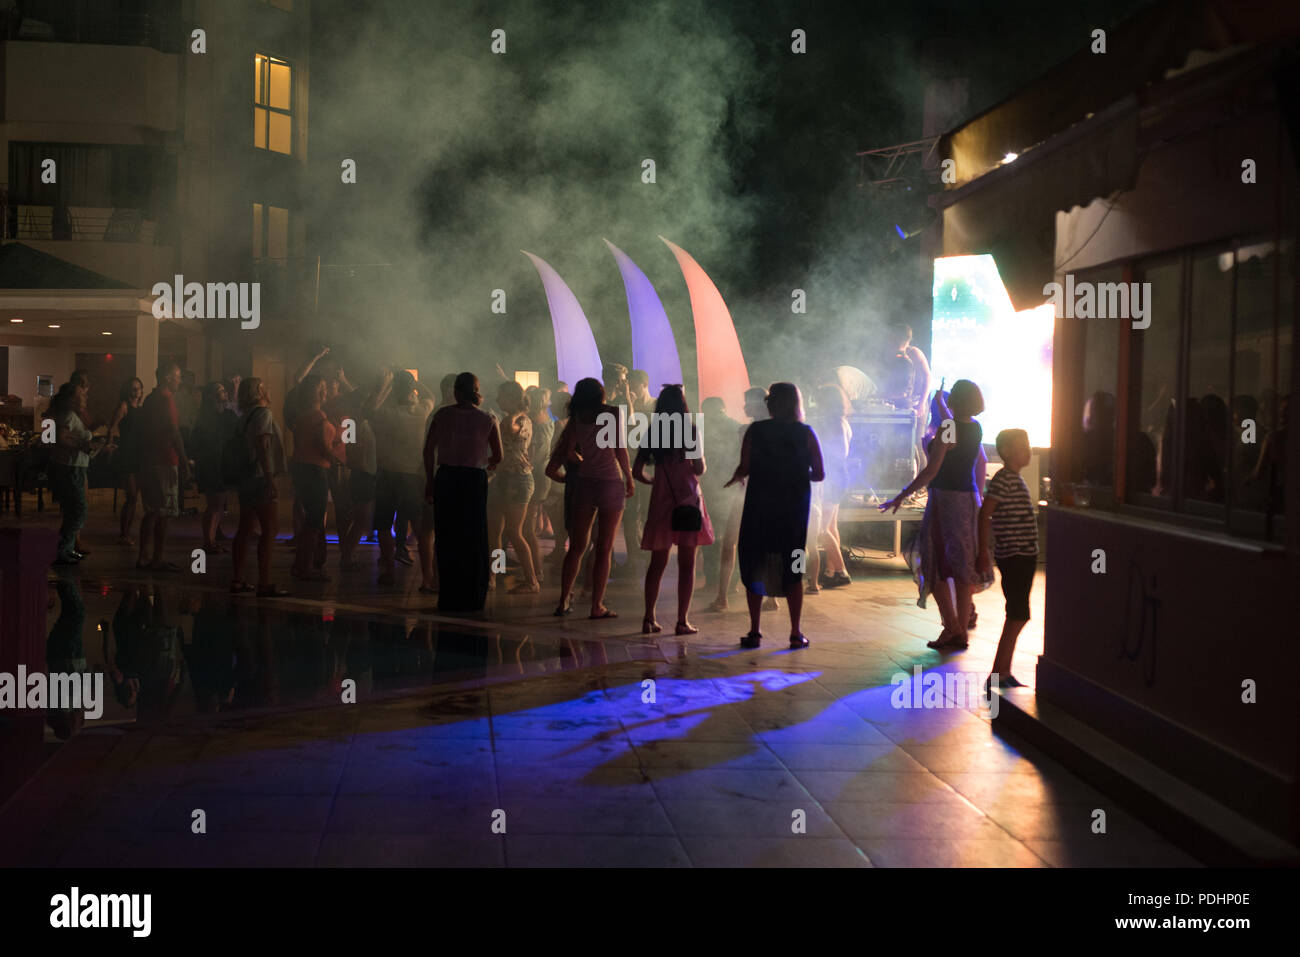 ANTALYA, Turquie, 15 juillet 2018 - les touristes russes la danse à un public libre de nuit dans la célèbre station balnéaire d'Antalya en Turquie au cours de l'été 2018 Banque D'Images